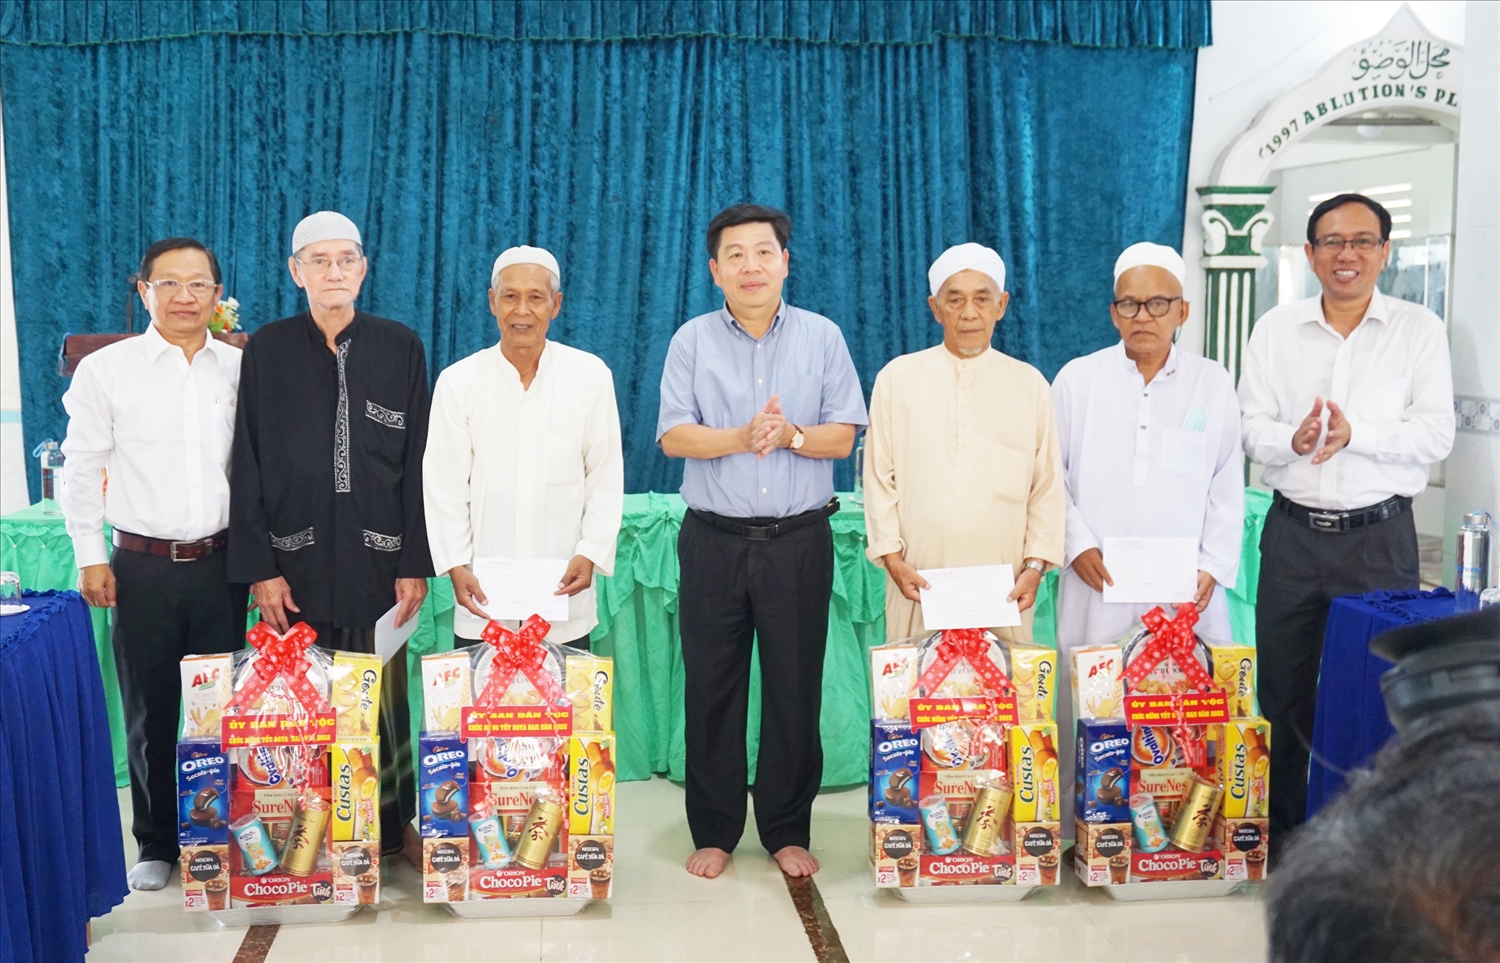 Thứ trưởng, Phó Chủ nhiệm Lê Sơn Hải cùng các thành viên trong Đoàn tặng quà đến 4 vị là Người có uy tín trong đồng bào DTTS là người Chăm 